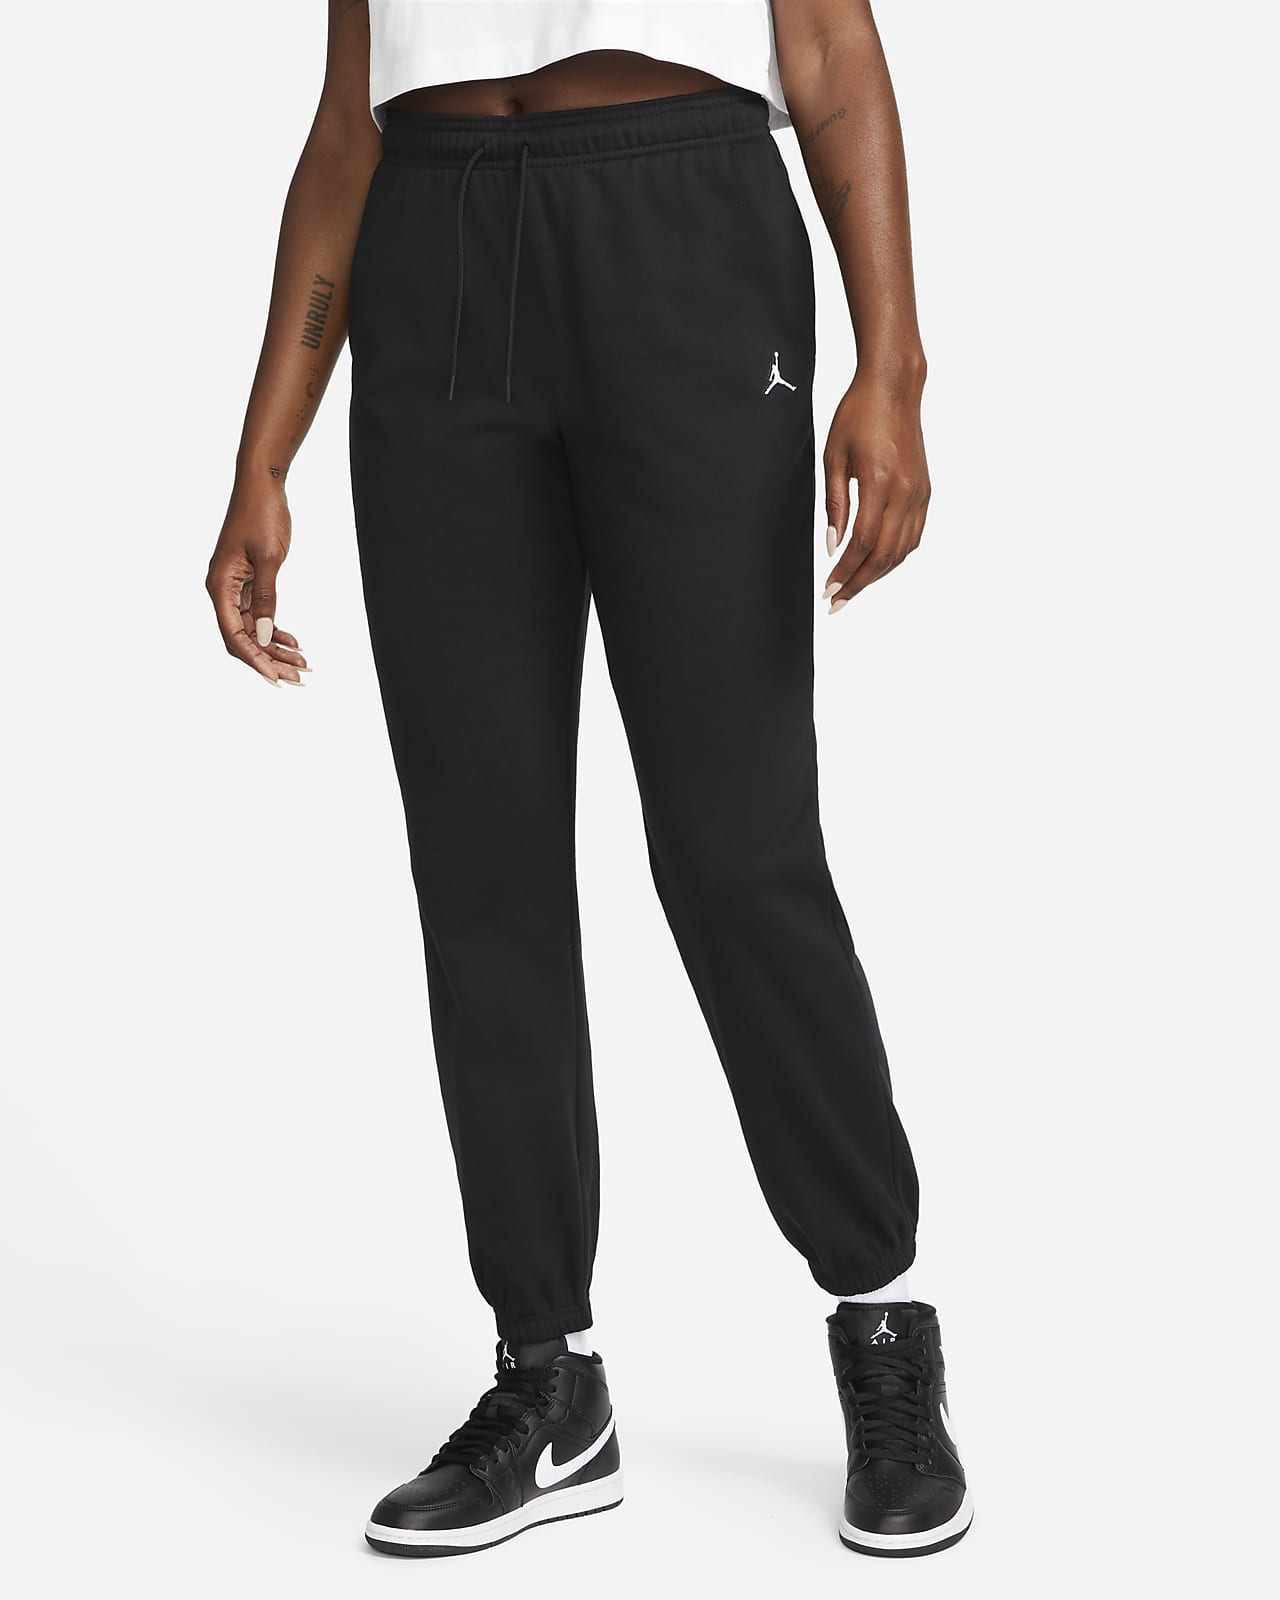 Jordan Essentials Pantalons de teixit Fleece - Dona